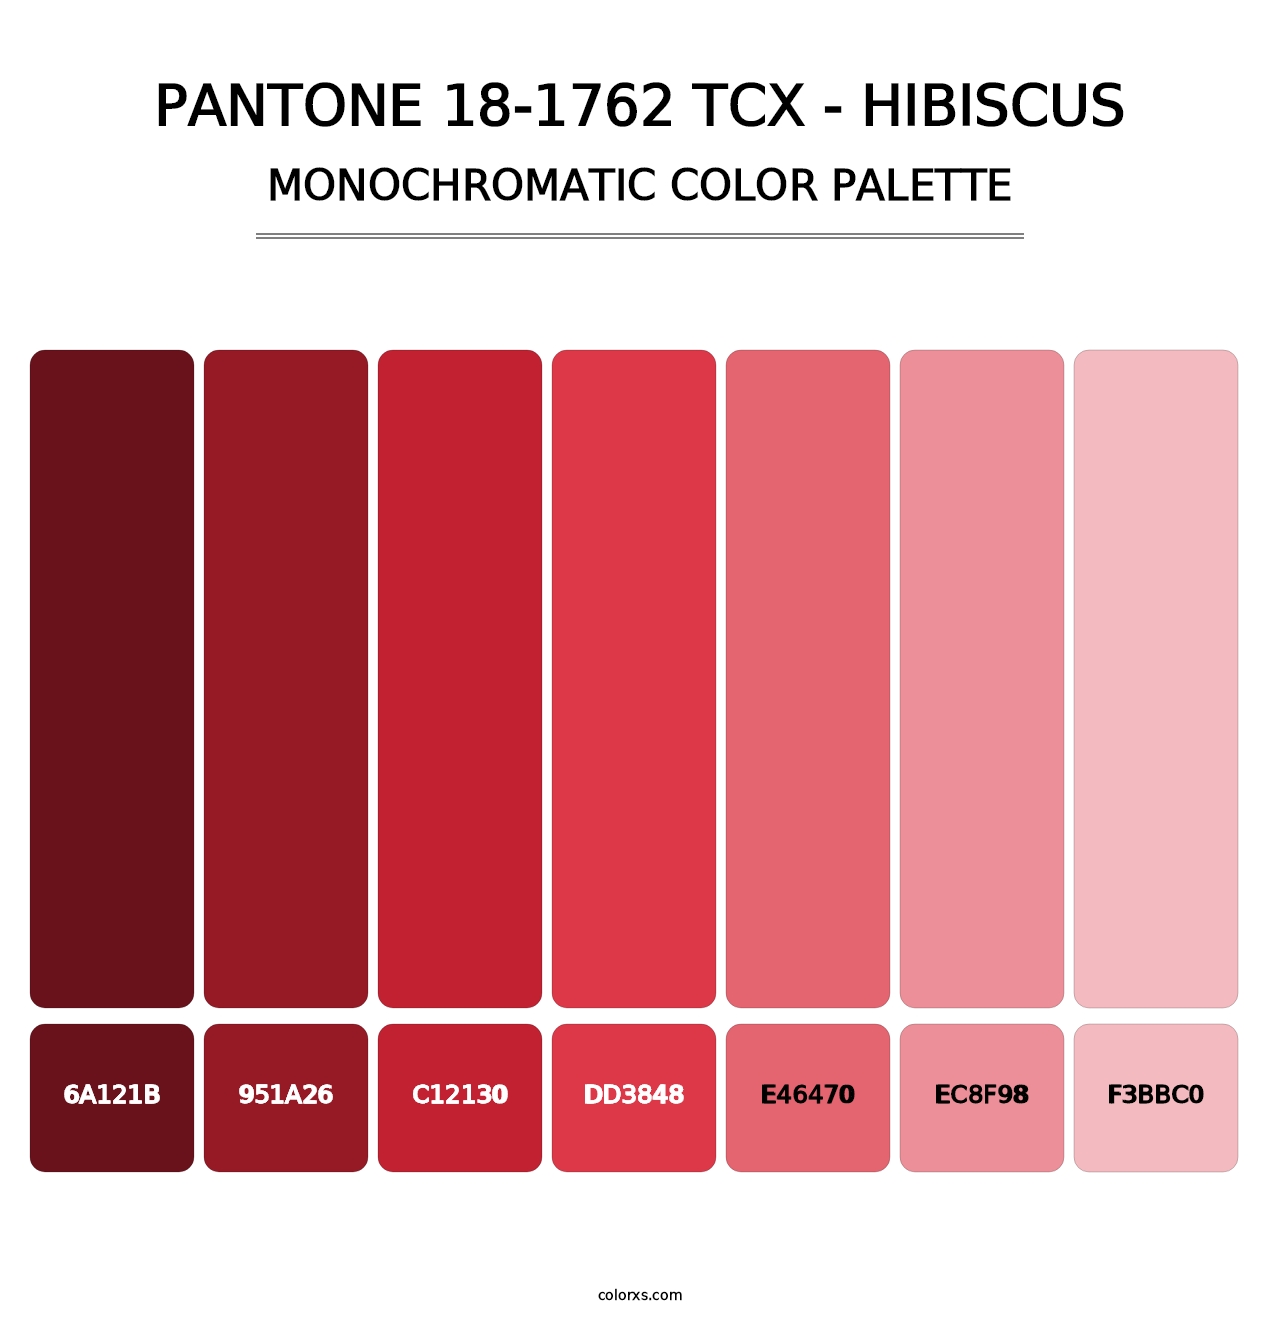 PANTONE 18-1762 TCX - Hibiscus - Monochromatic Color Palette